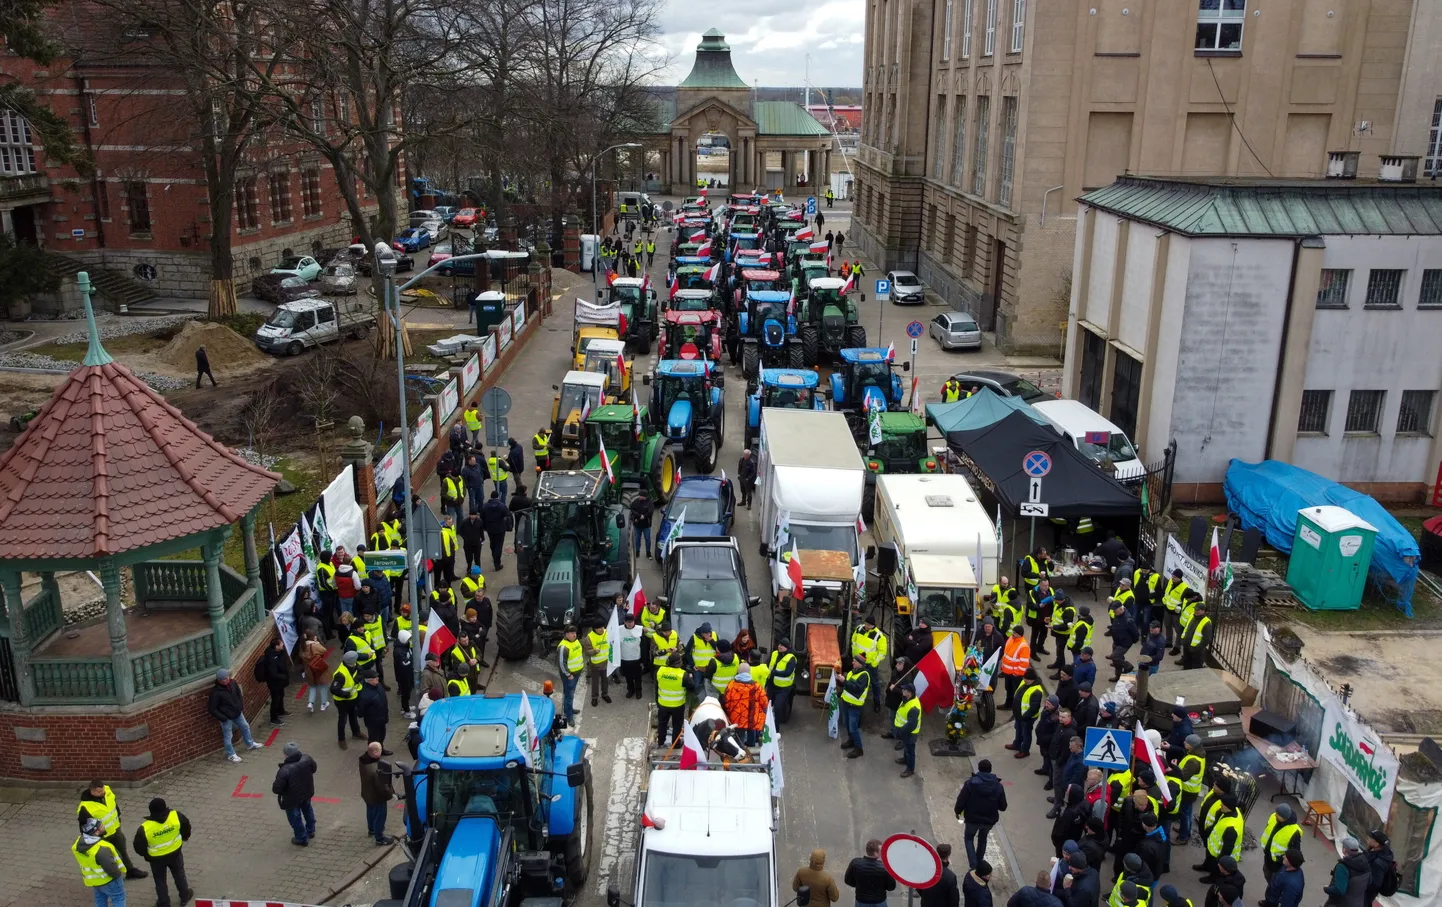 Poola farmerid protestivad, blokeerides tänava Szczecinis.